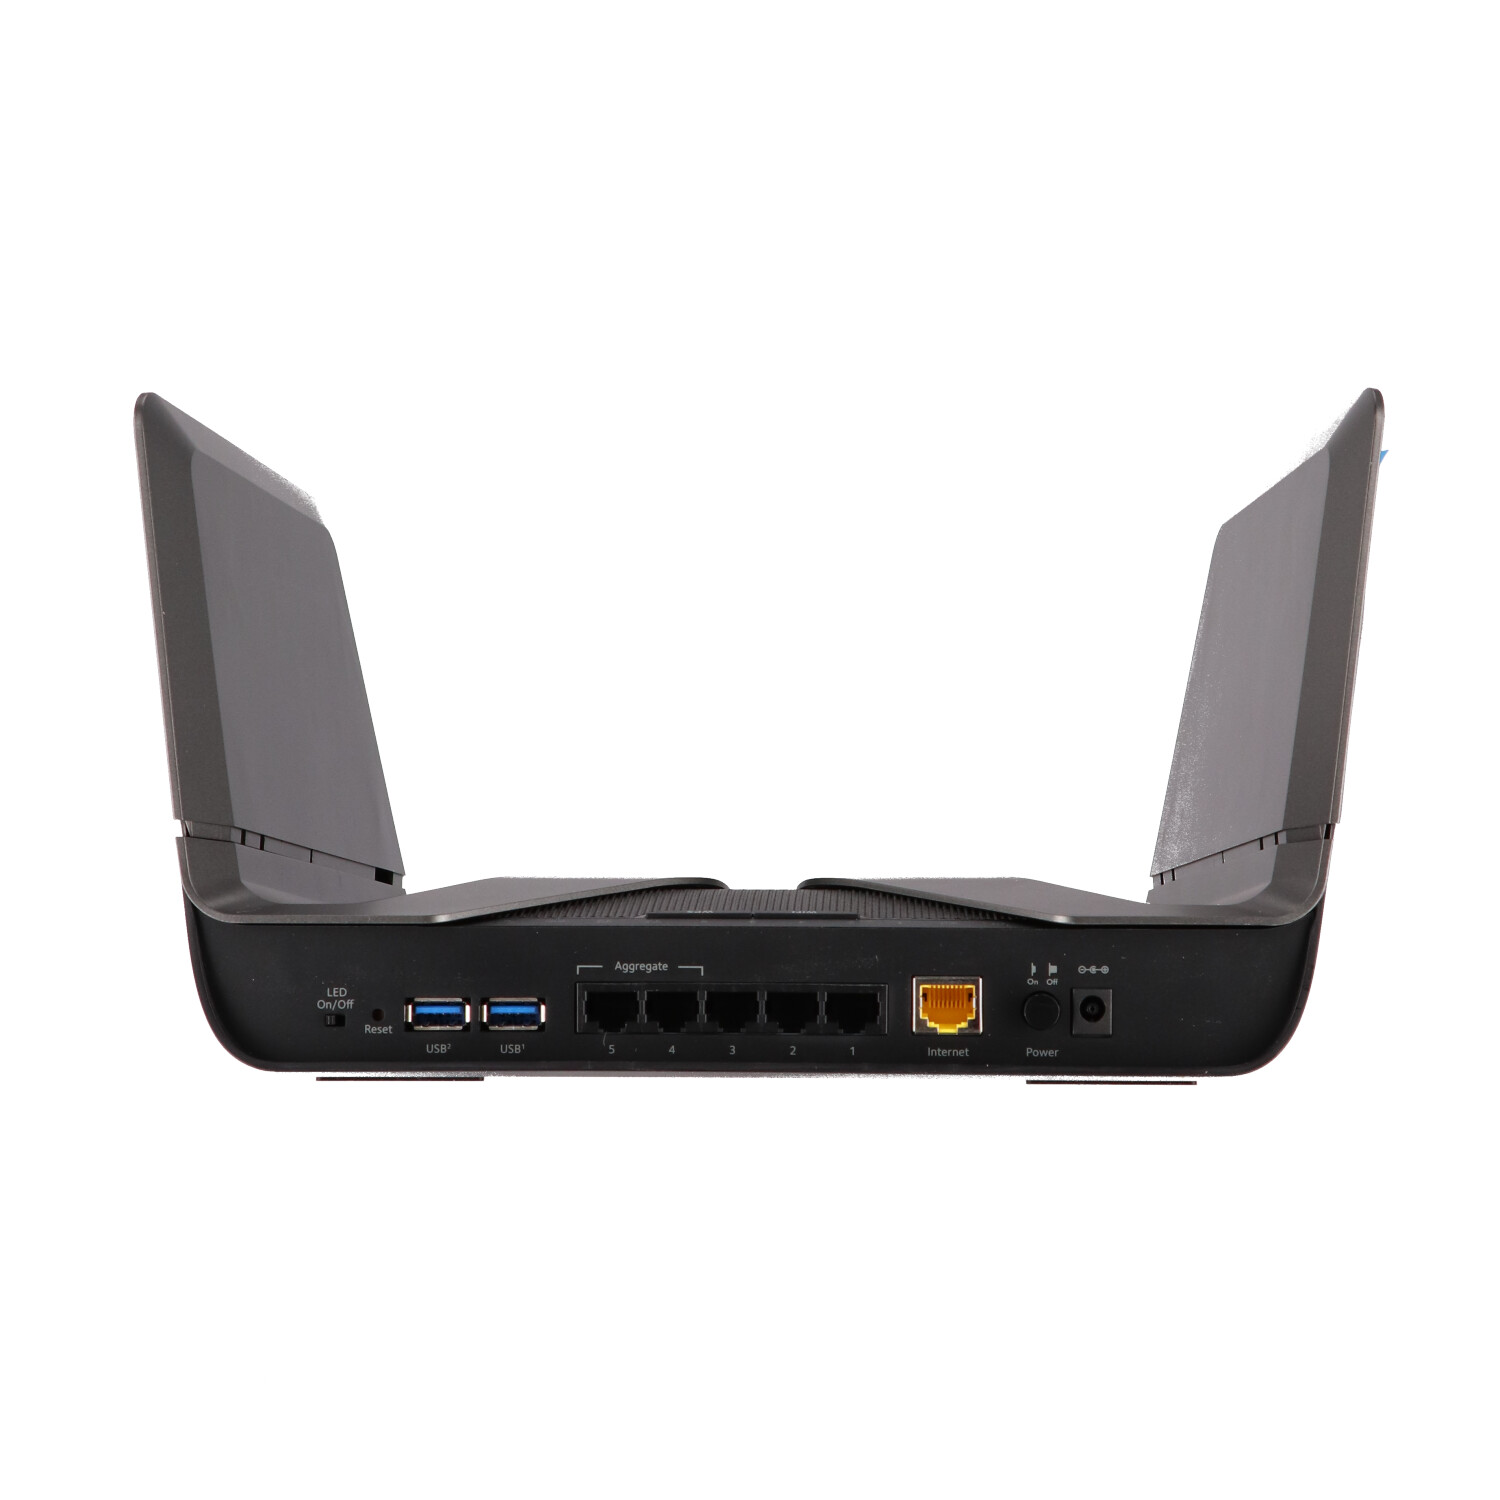 [メーカー生産終了品] ネットギア NETGEAR WiFi ルーター 無線LAN 11ax (WiFi6) AX6000  無線速度4.8G  1.2G 5ギガ有